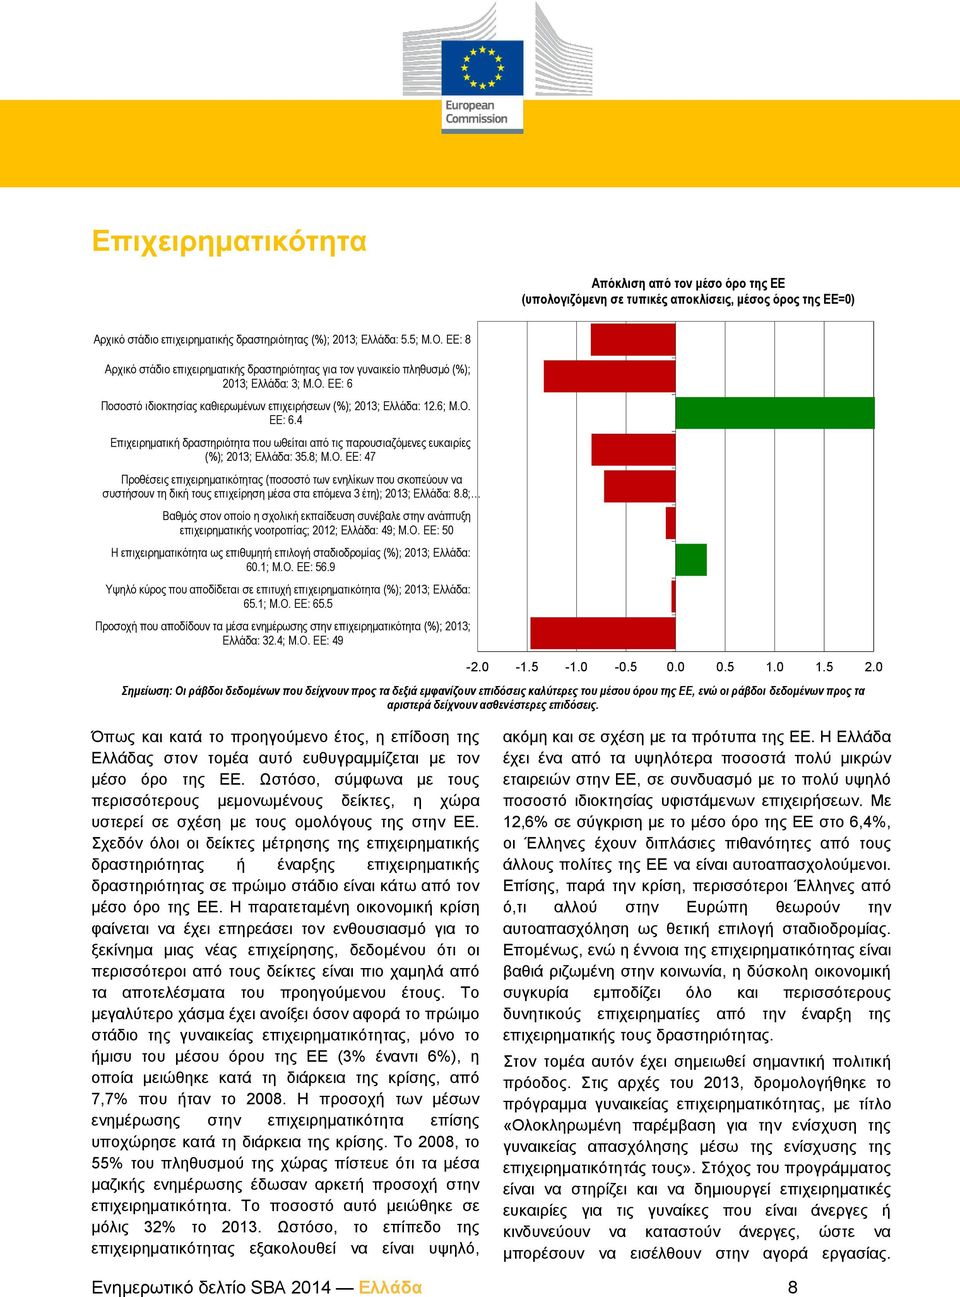 Ποσοστό ιδιοκτησίας καθιερωμένων επιχειρήσεων (%); 2013; Ελλάδα: 12.6; Μ.Ο.